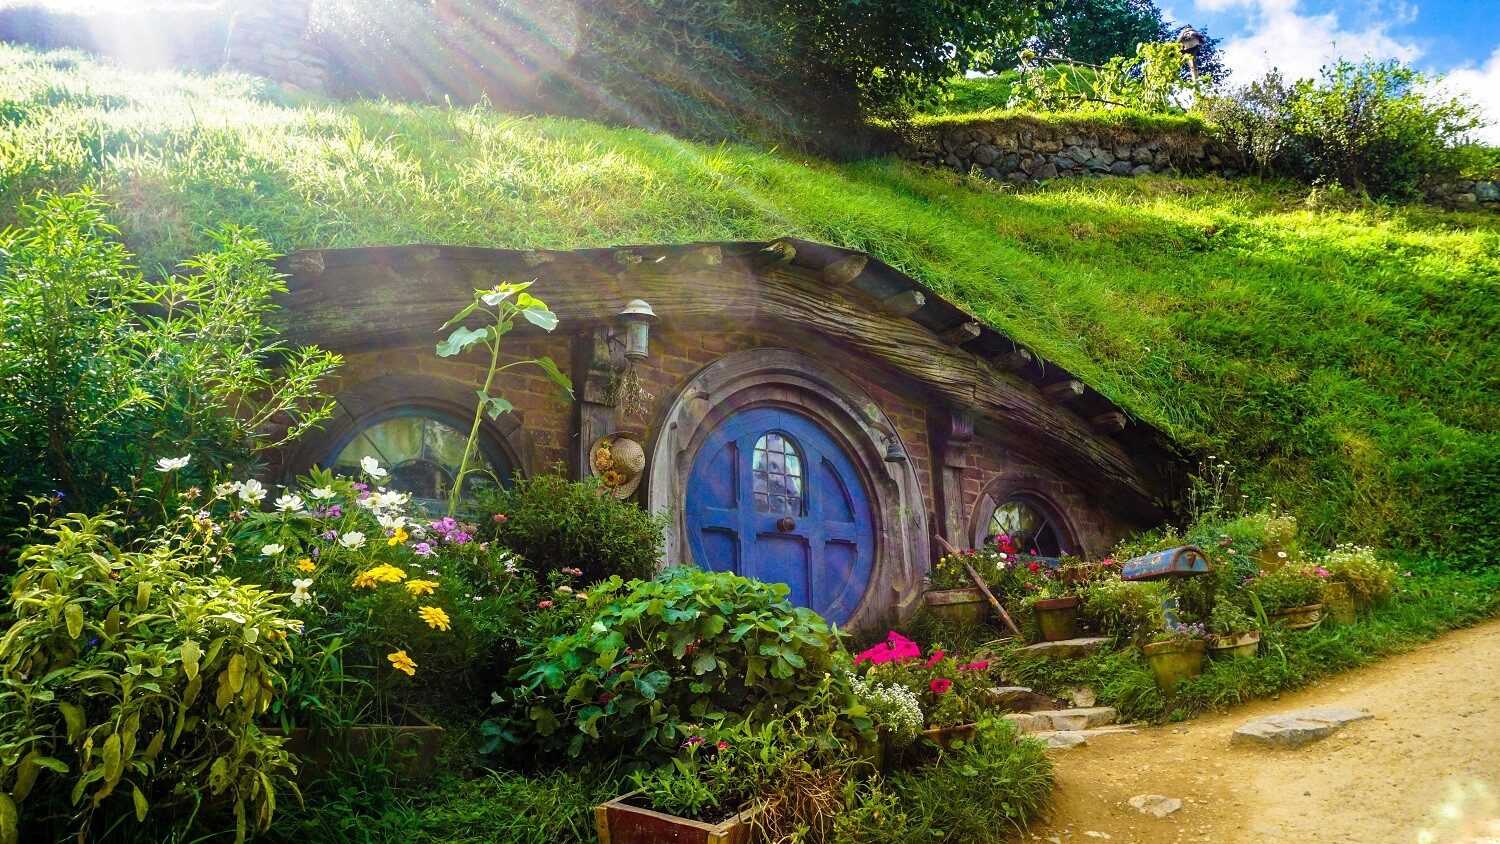 Eine Hobbit-Behausung aus dem Fantasyfilm Herr der Ringe.